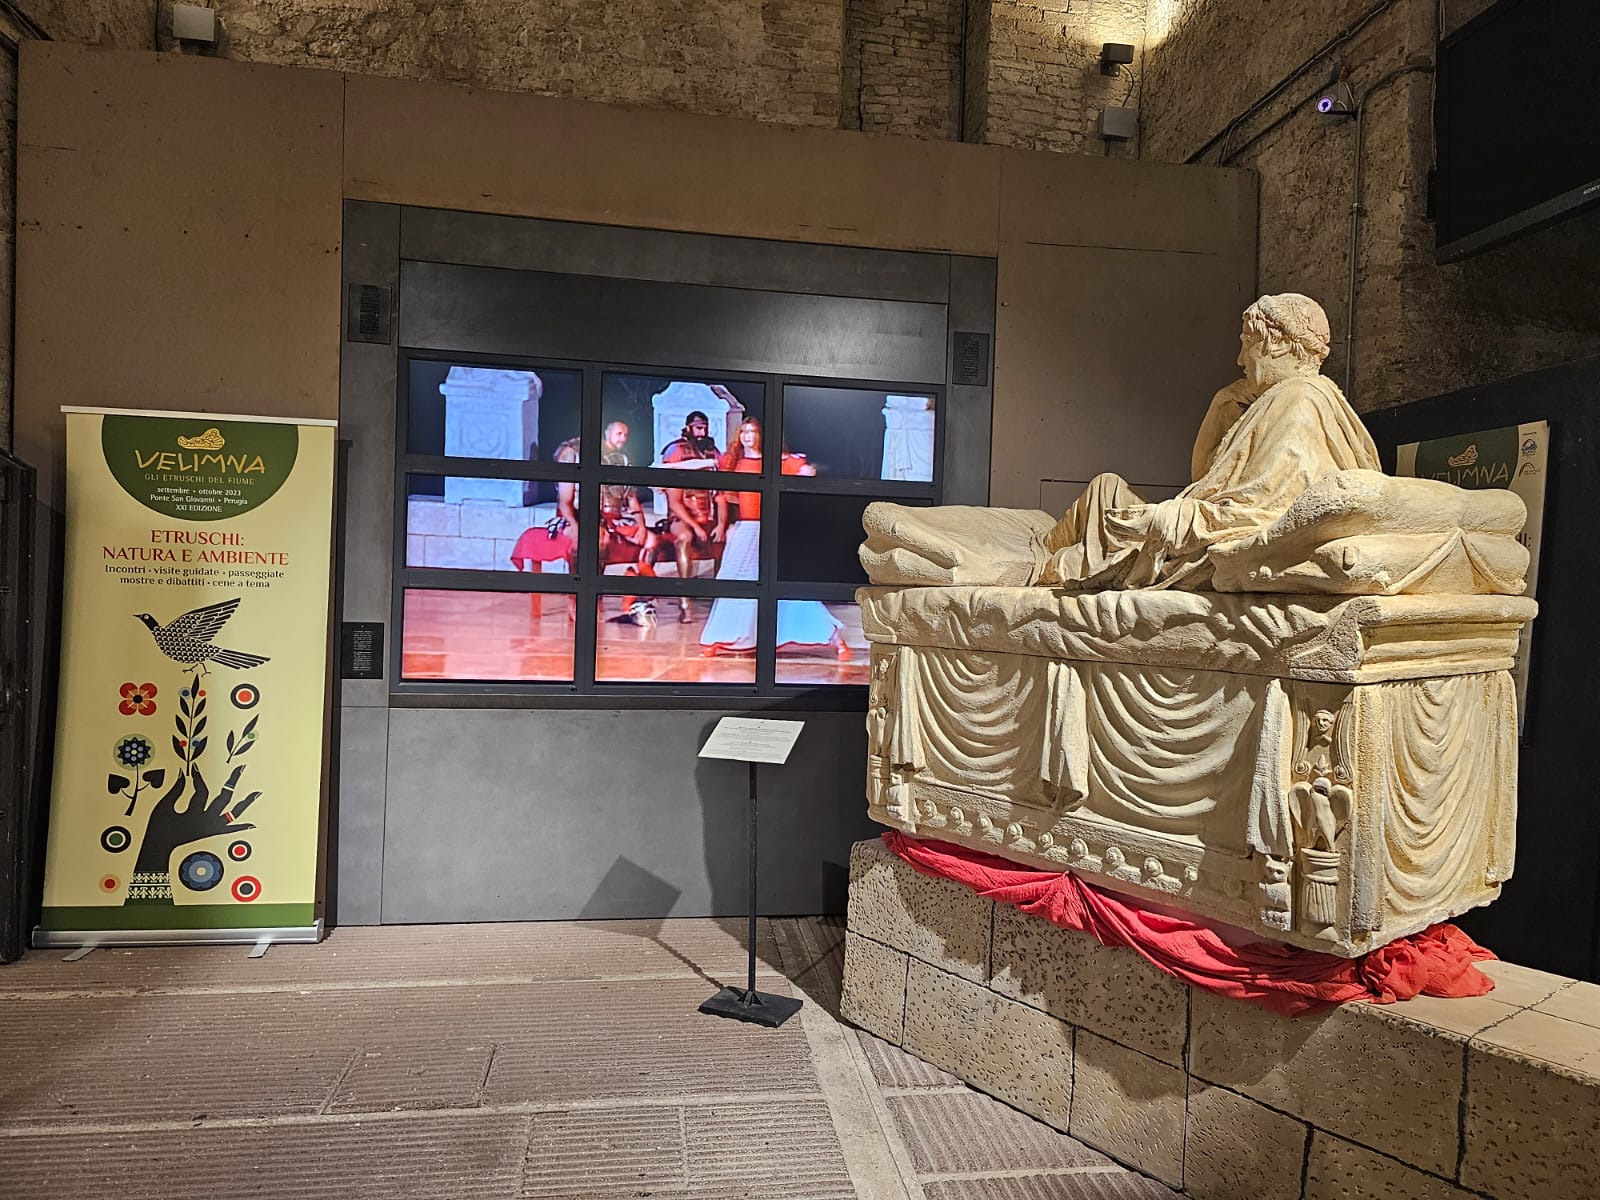 Inaugurata al Cerp la mostra “Etruschi: natura e ambiente” 